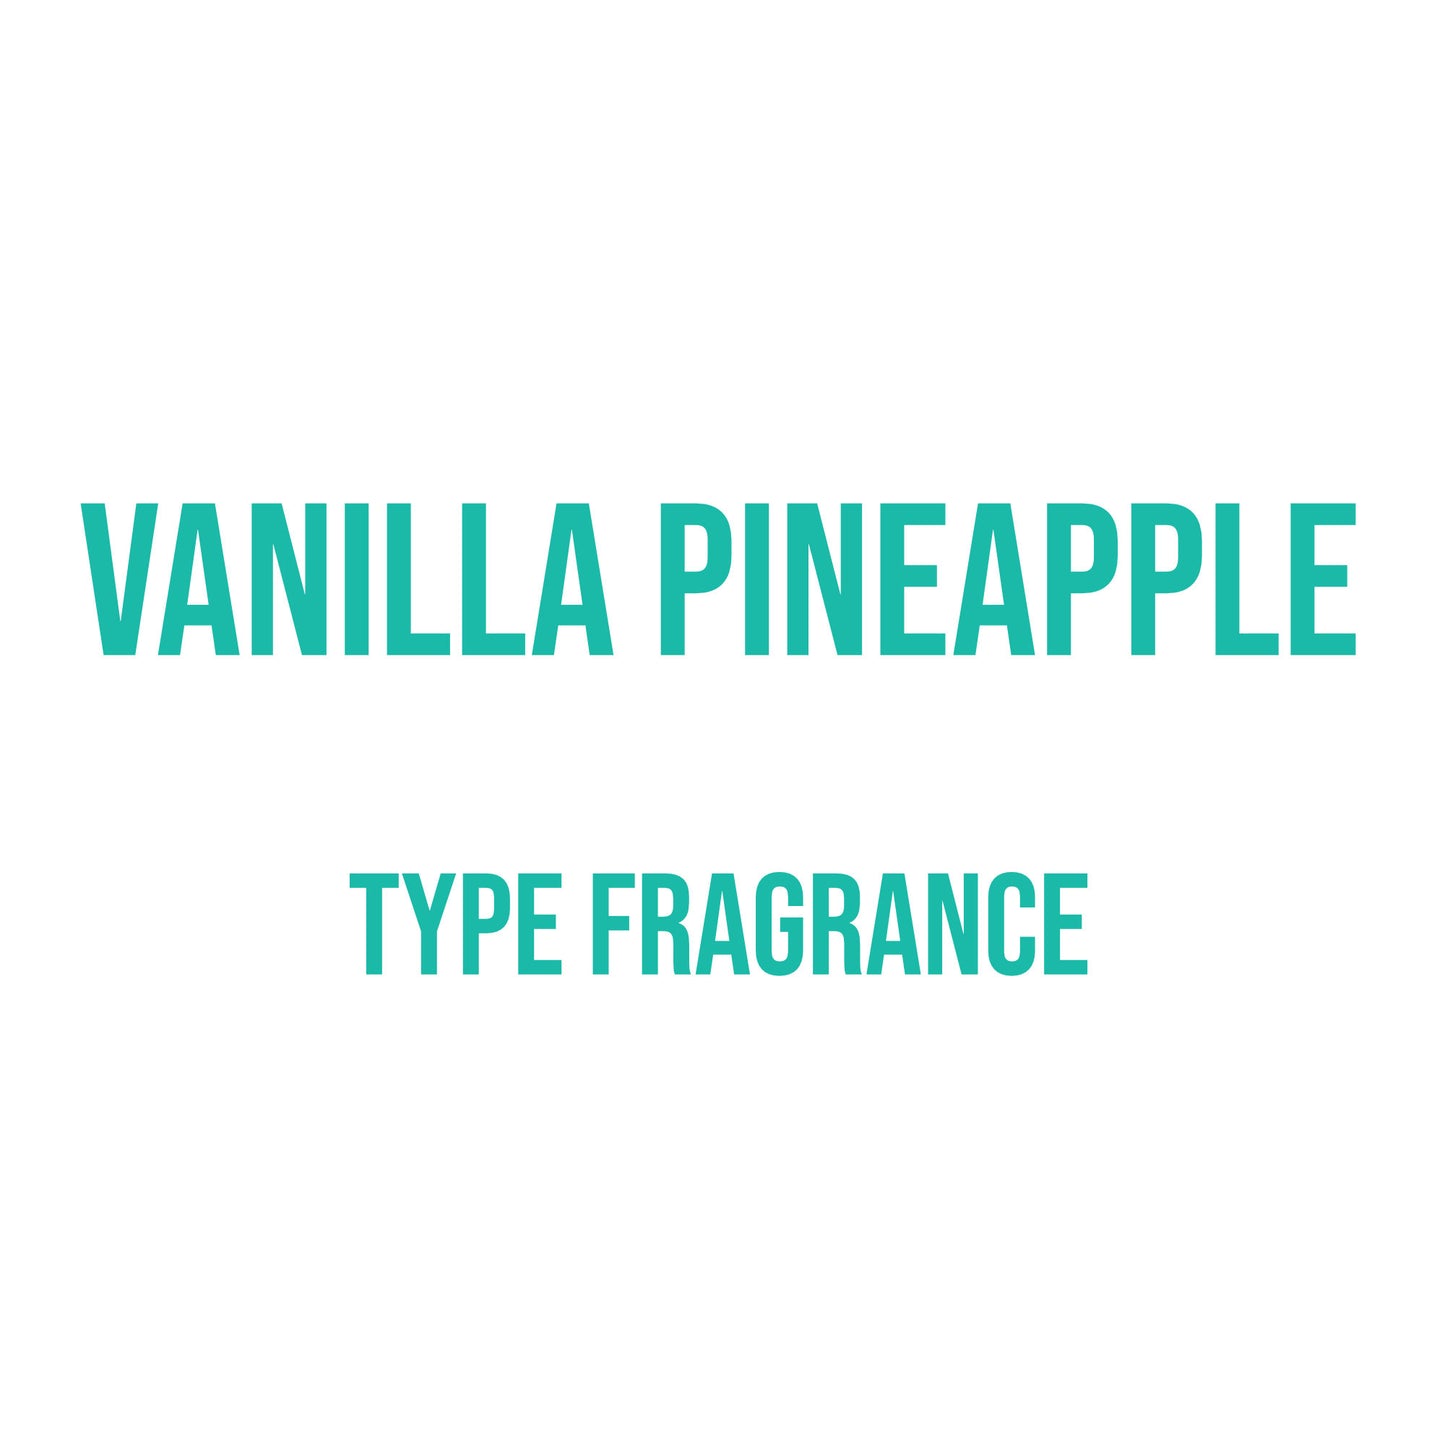 Vanilla Pineapple Type Fragrance